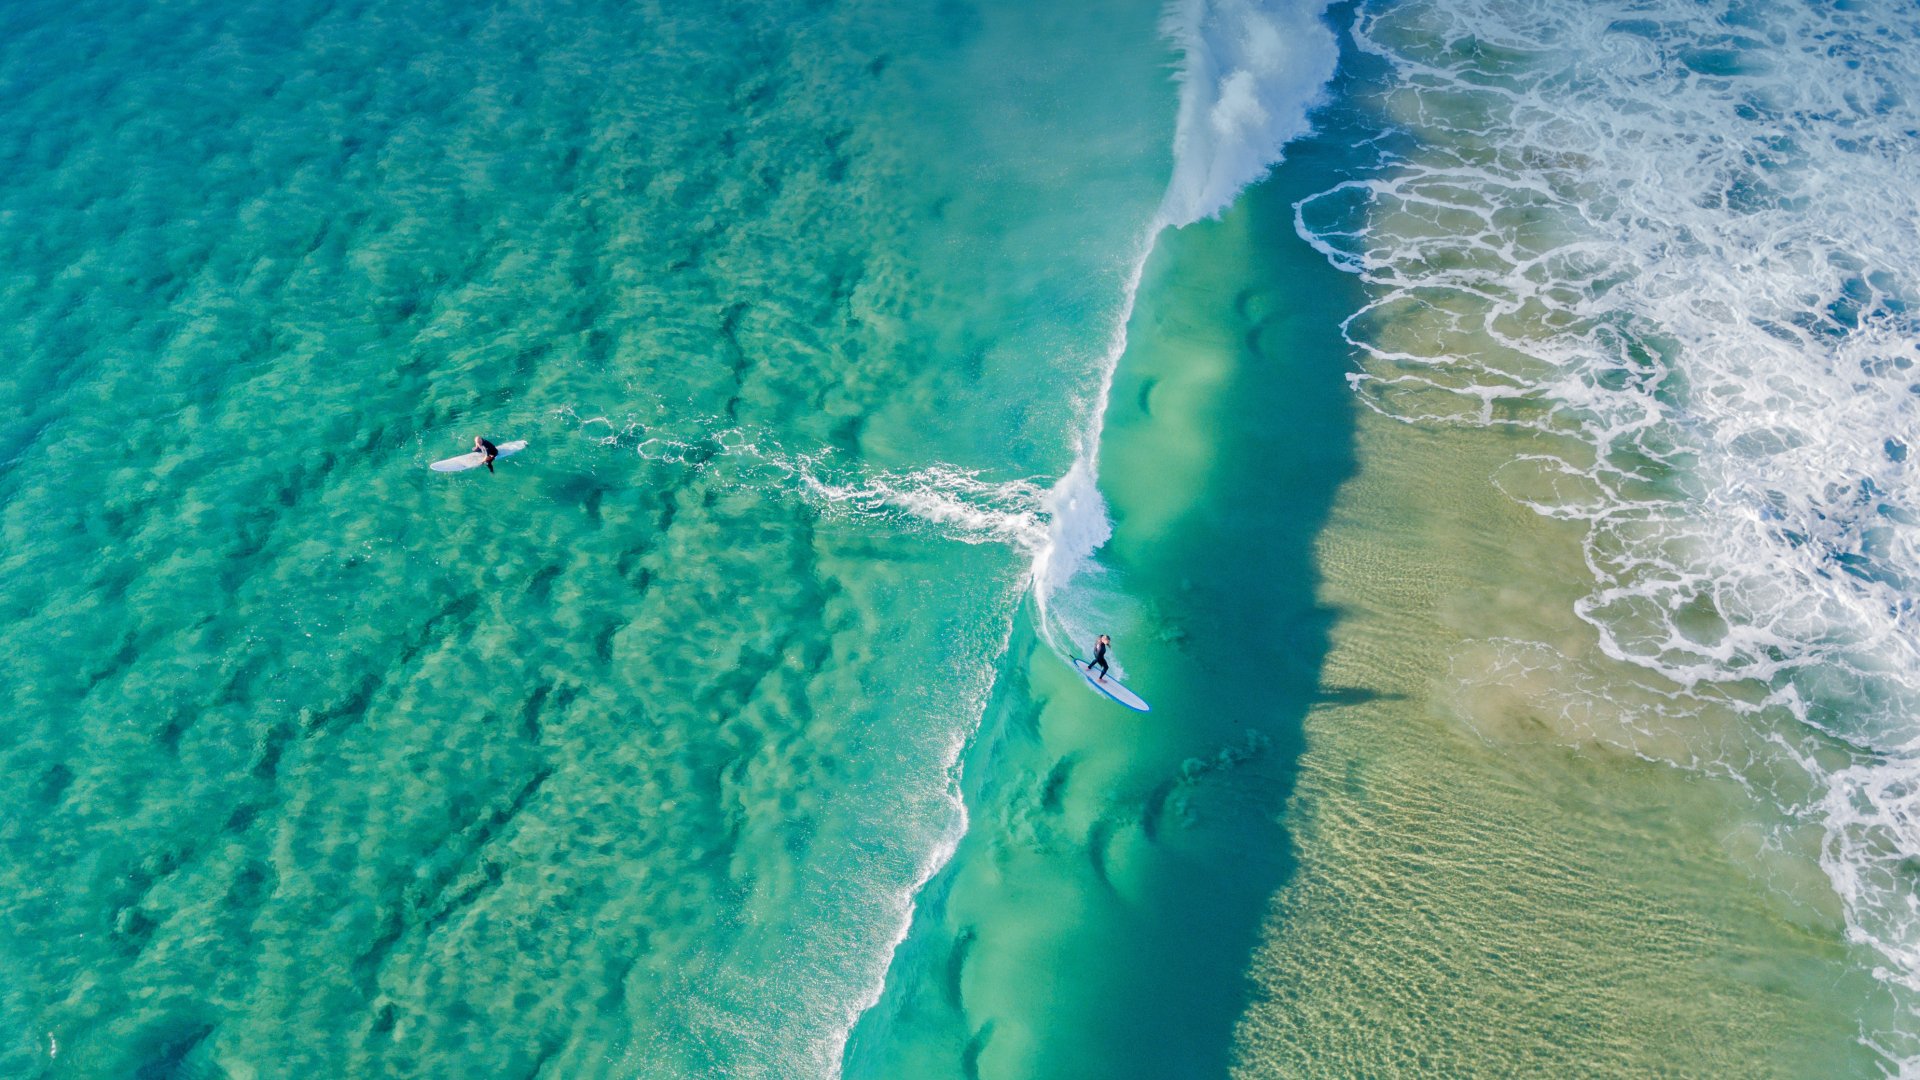 Download Surfing Sports 4k Ultra HD Wallpaper by Darren Tierney